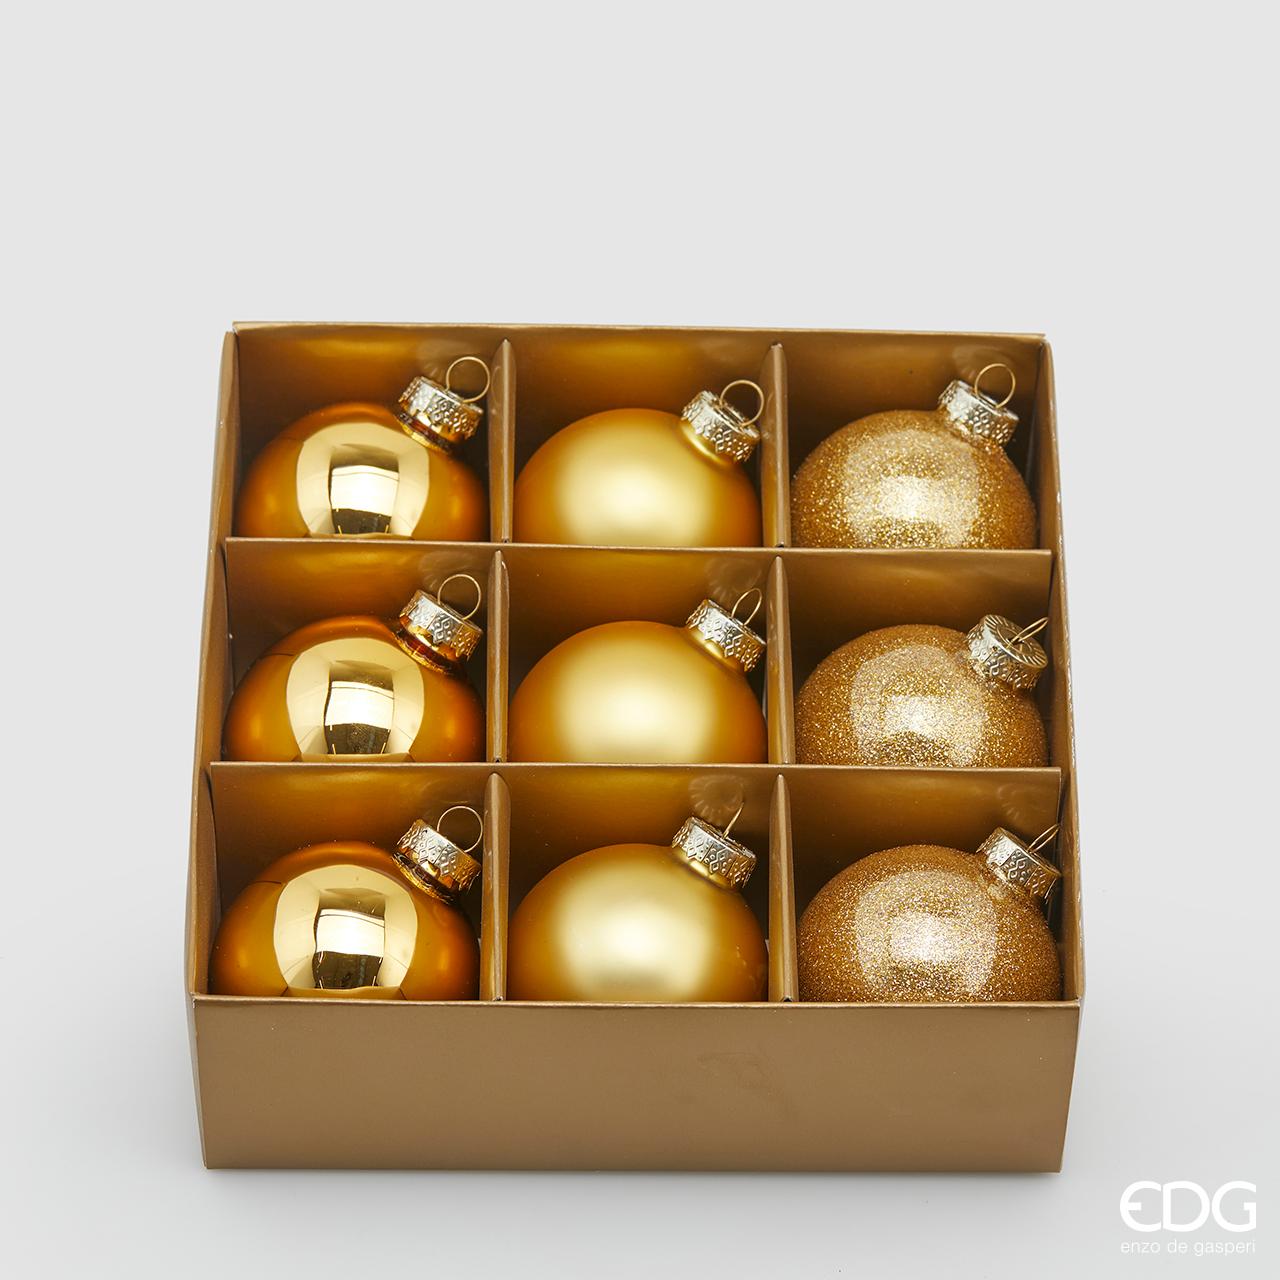 Confezione di 9 palline in vetro di colore oro (3 lucide, 3 opaca e 3 glitterata) con diametro di 6 cm. In negozio e online su tuttochic.it